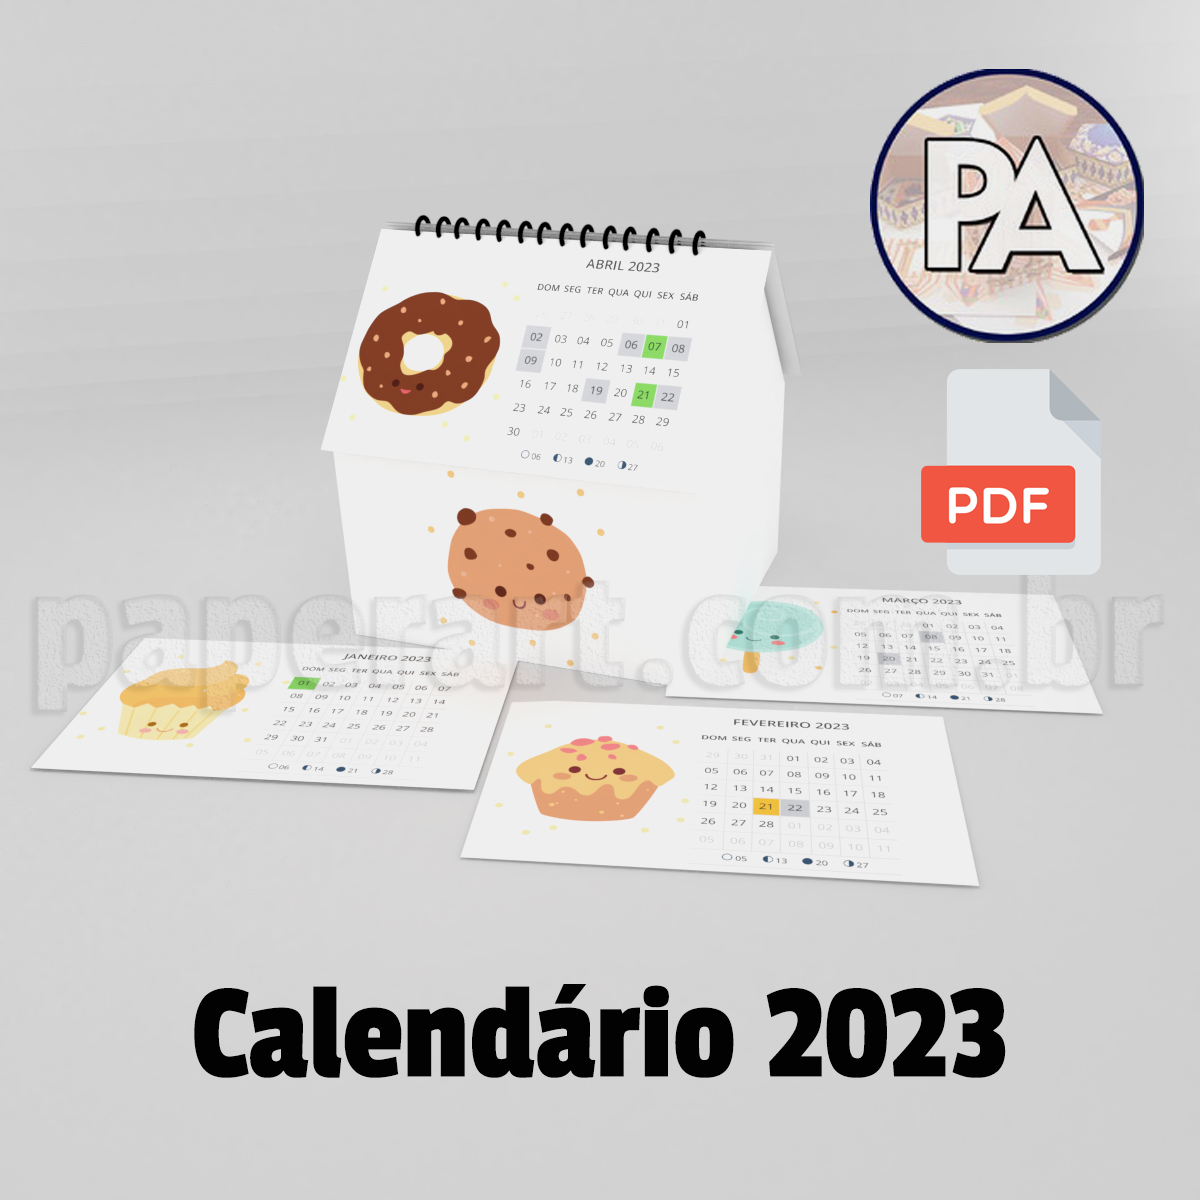 Calendario Candy 2023